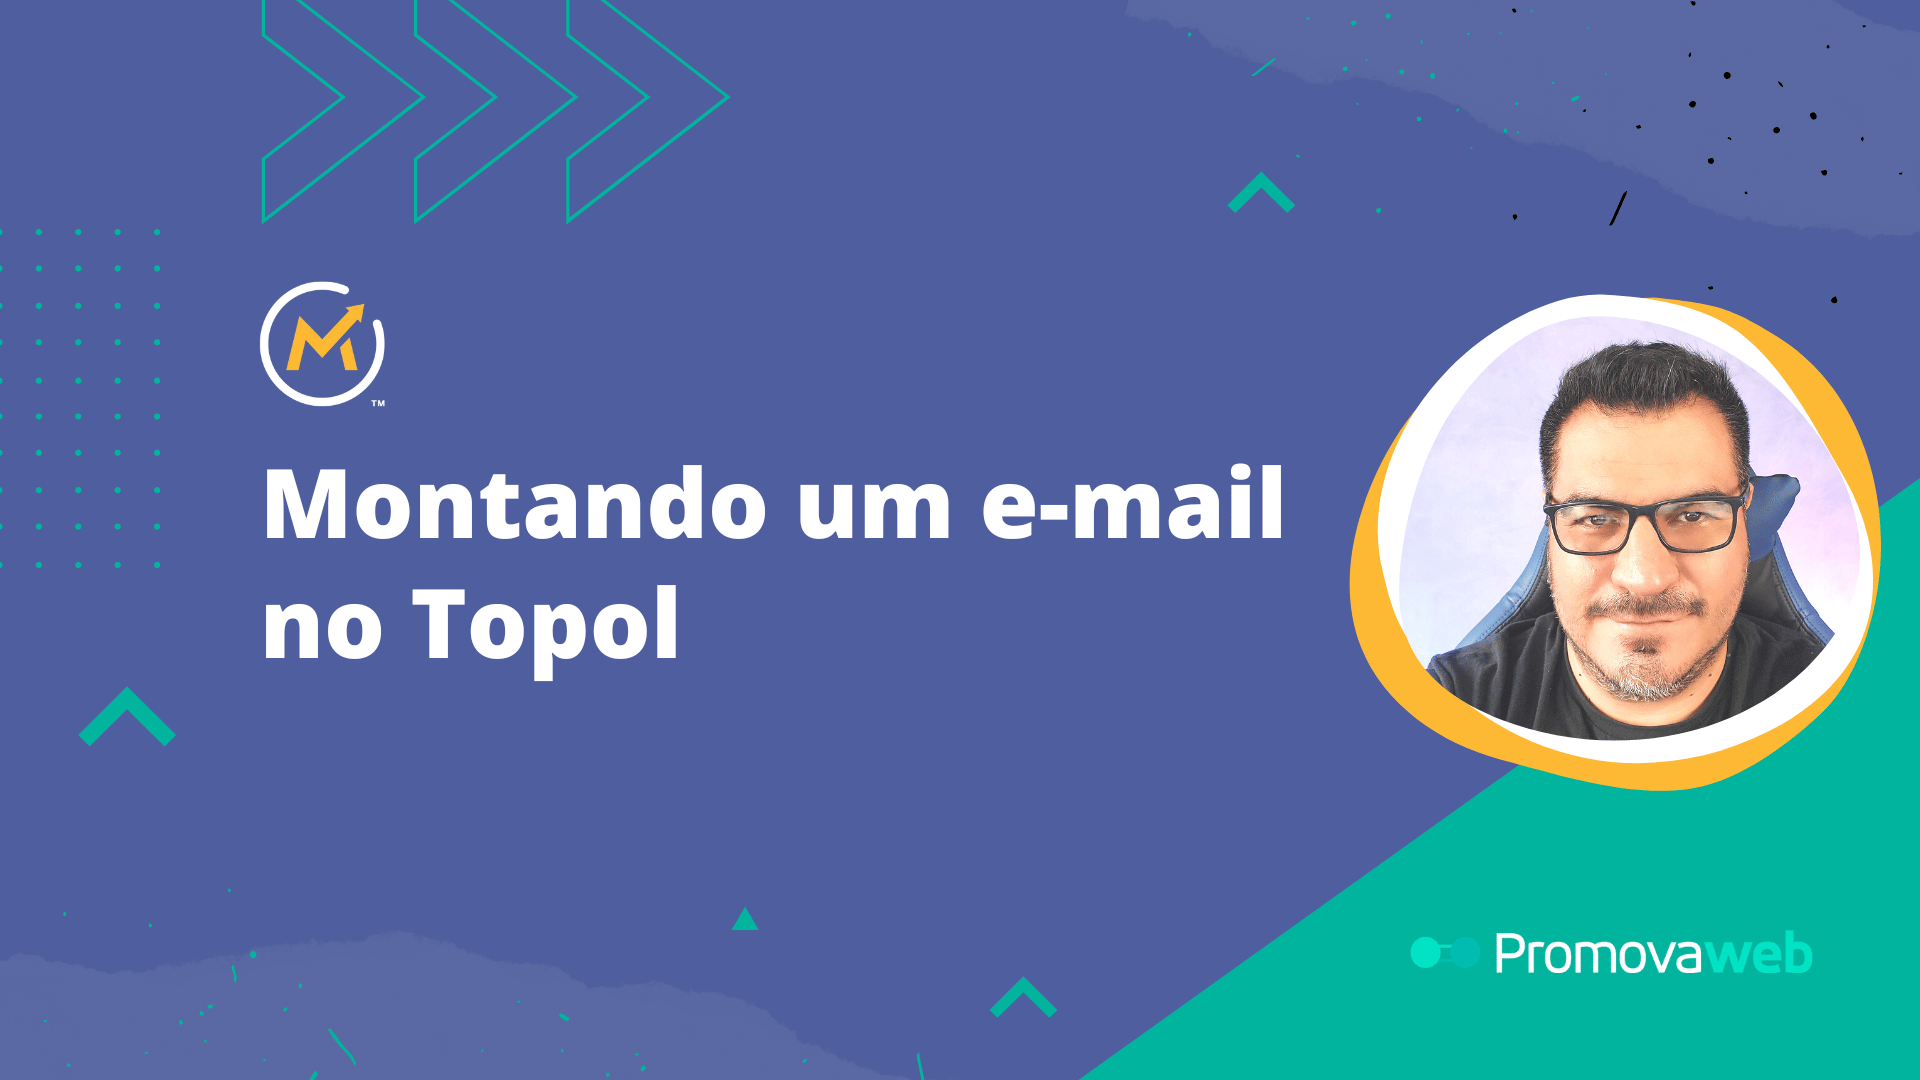 Montando um e-mail no Topol